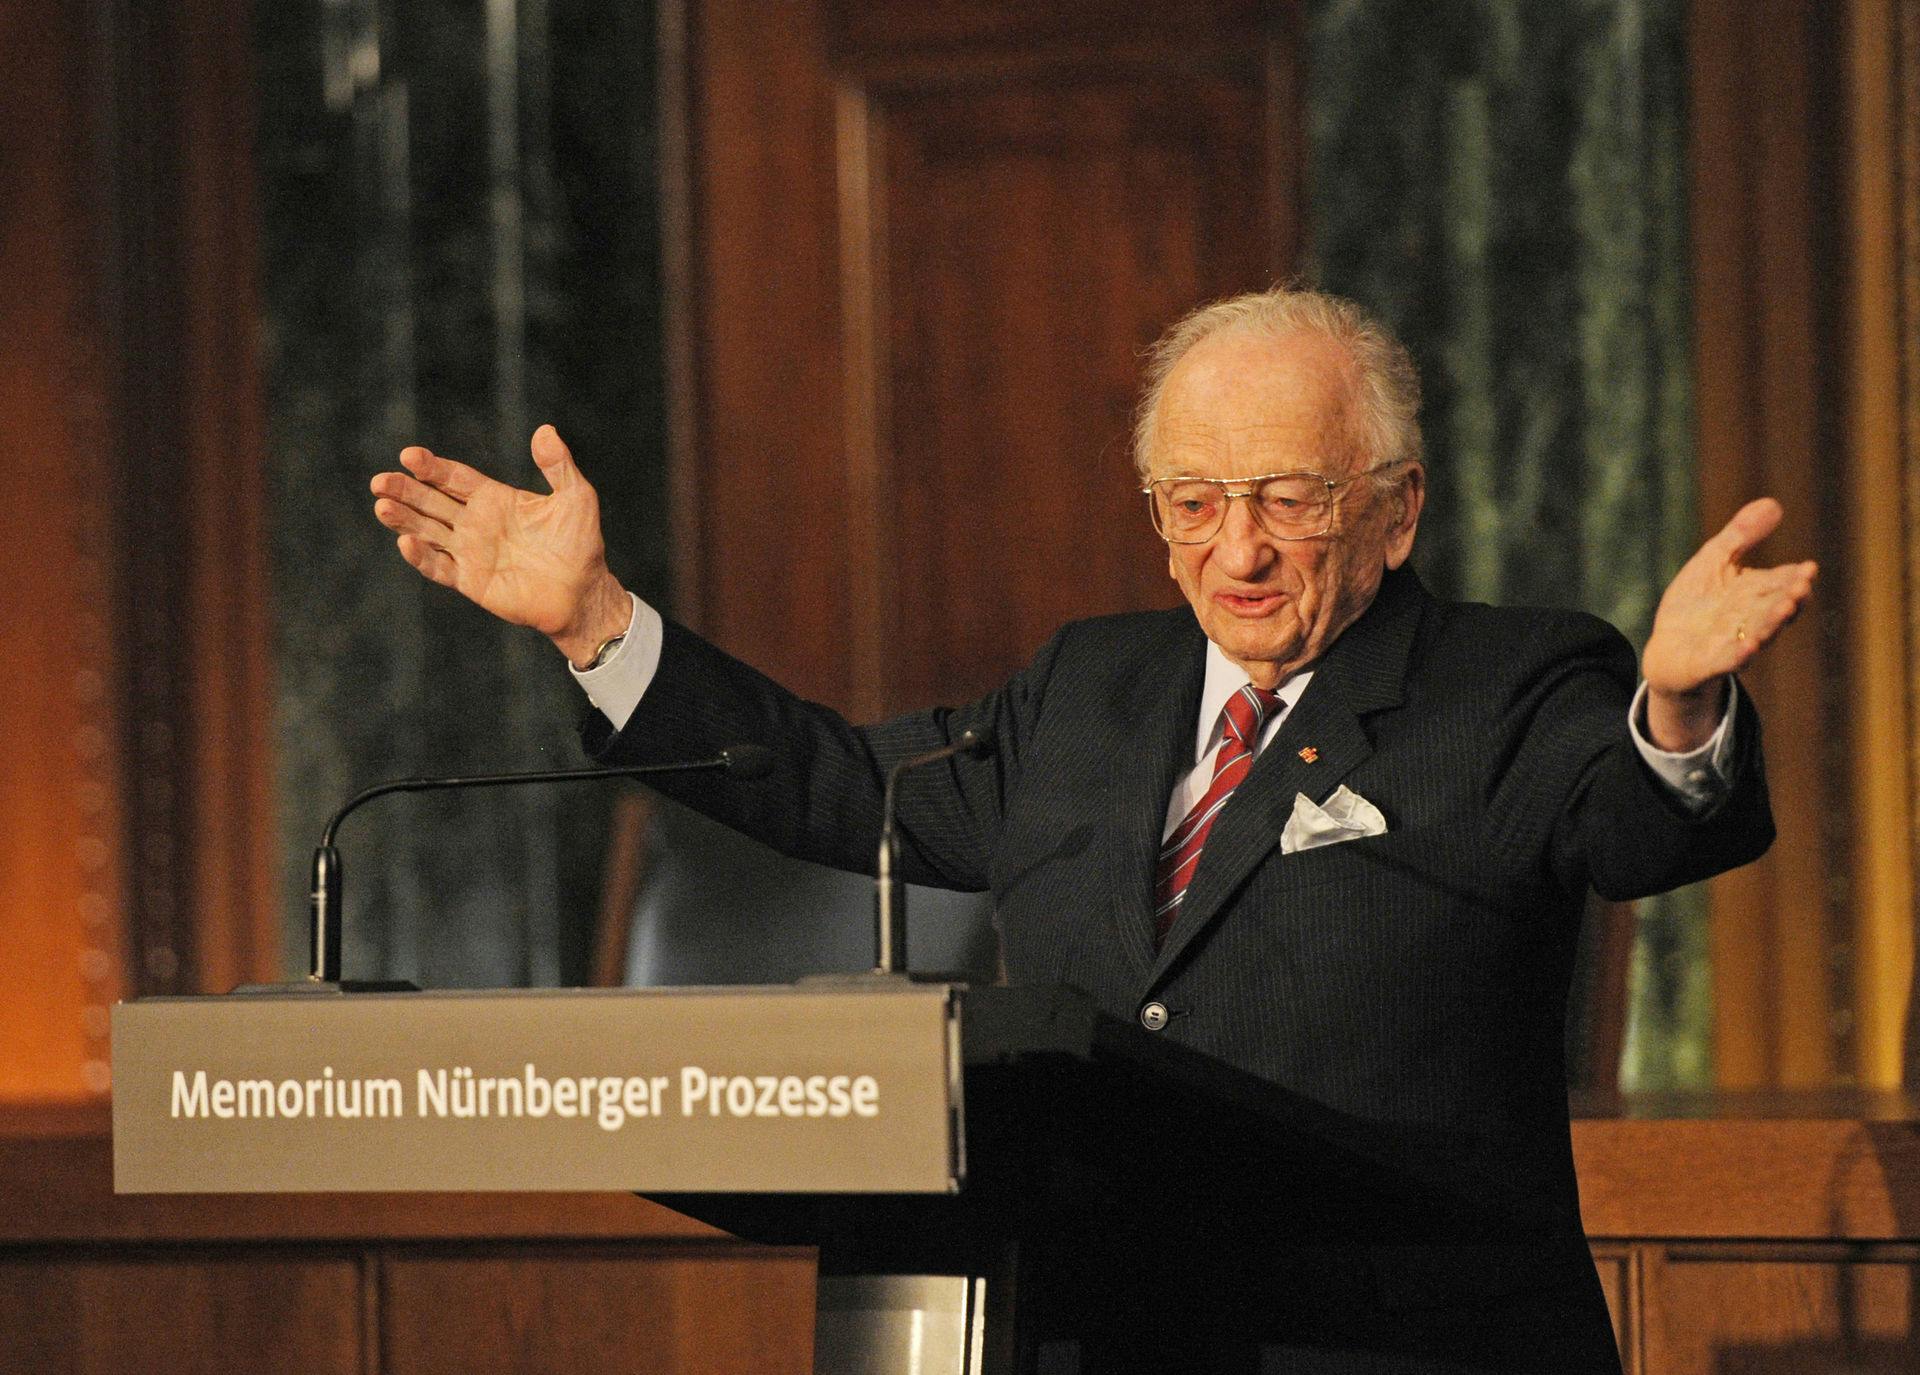 Benjamin Ferencz til åbningen af et nyt informations- og dokumentationscenter&nbsp; "Memorial Nuremberg Trials" i Nürnberg 2010.
